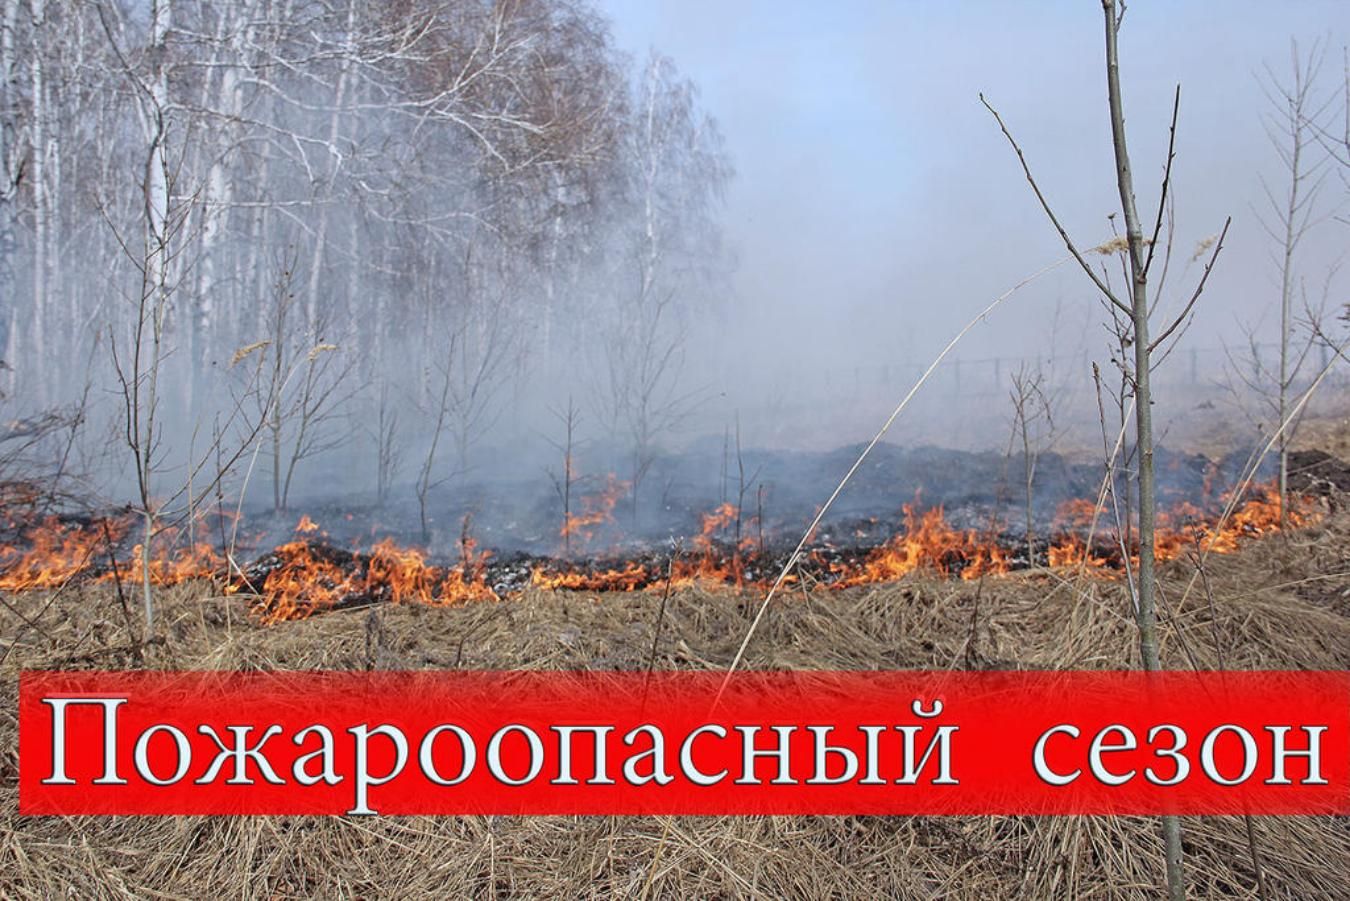 На территории Томской области установлен особый противопожарный режим.